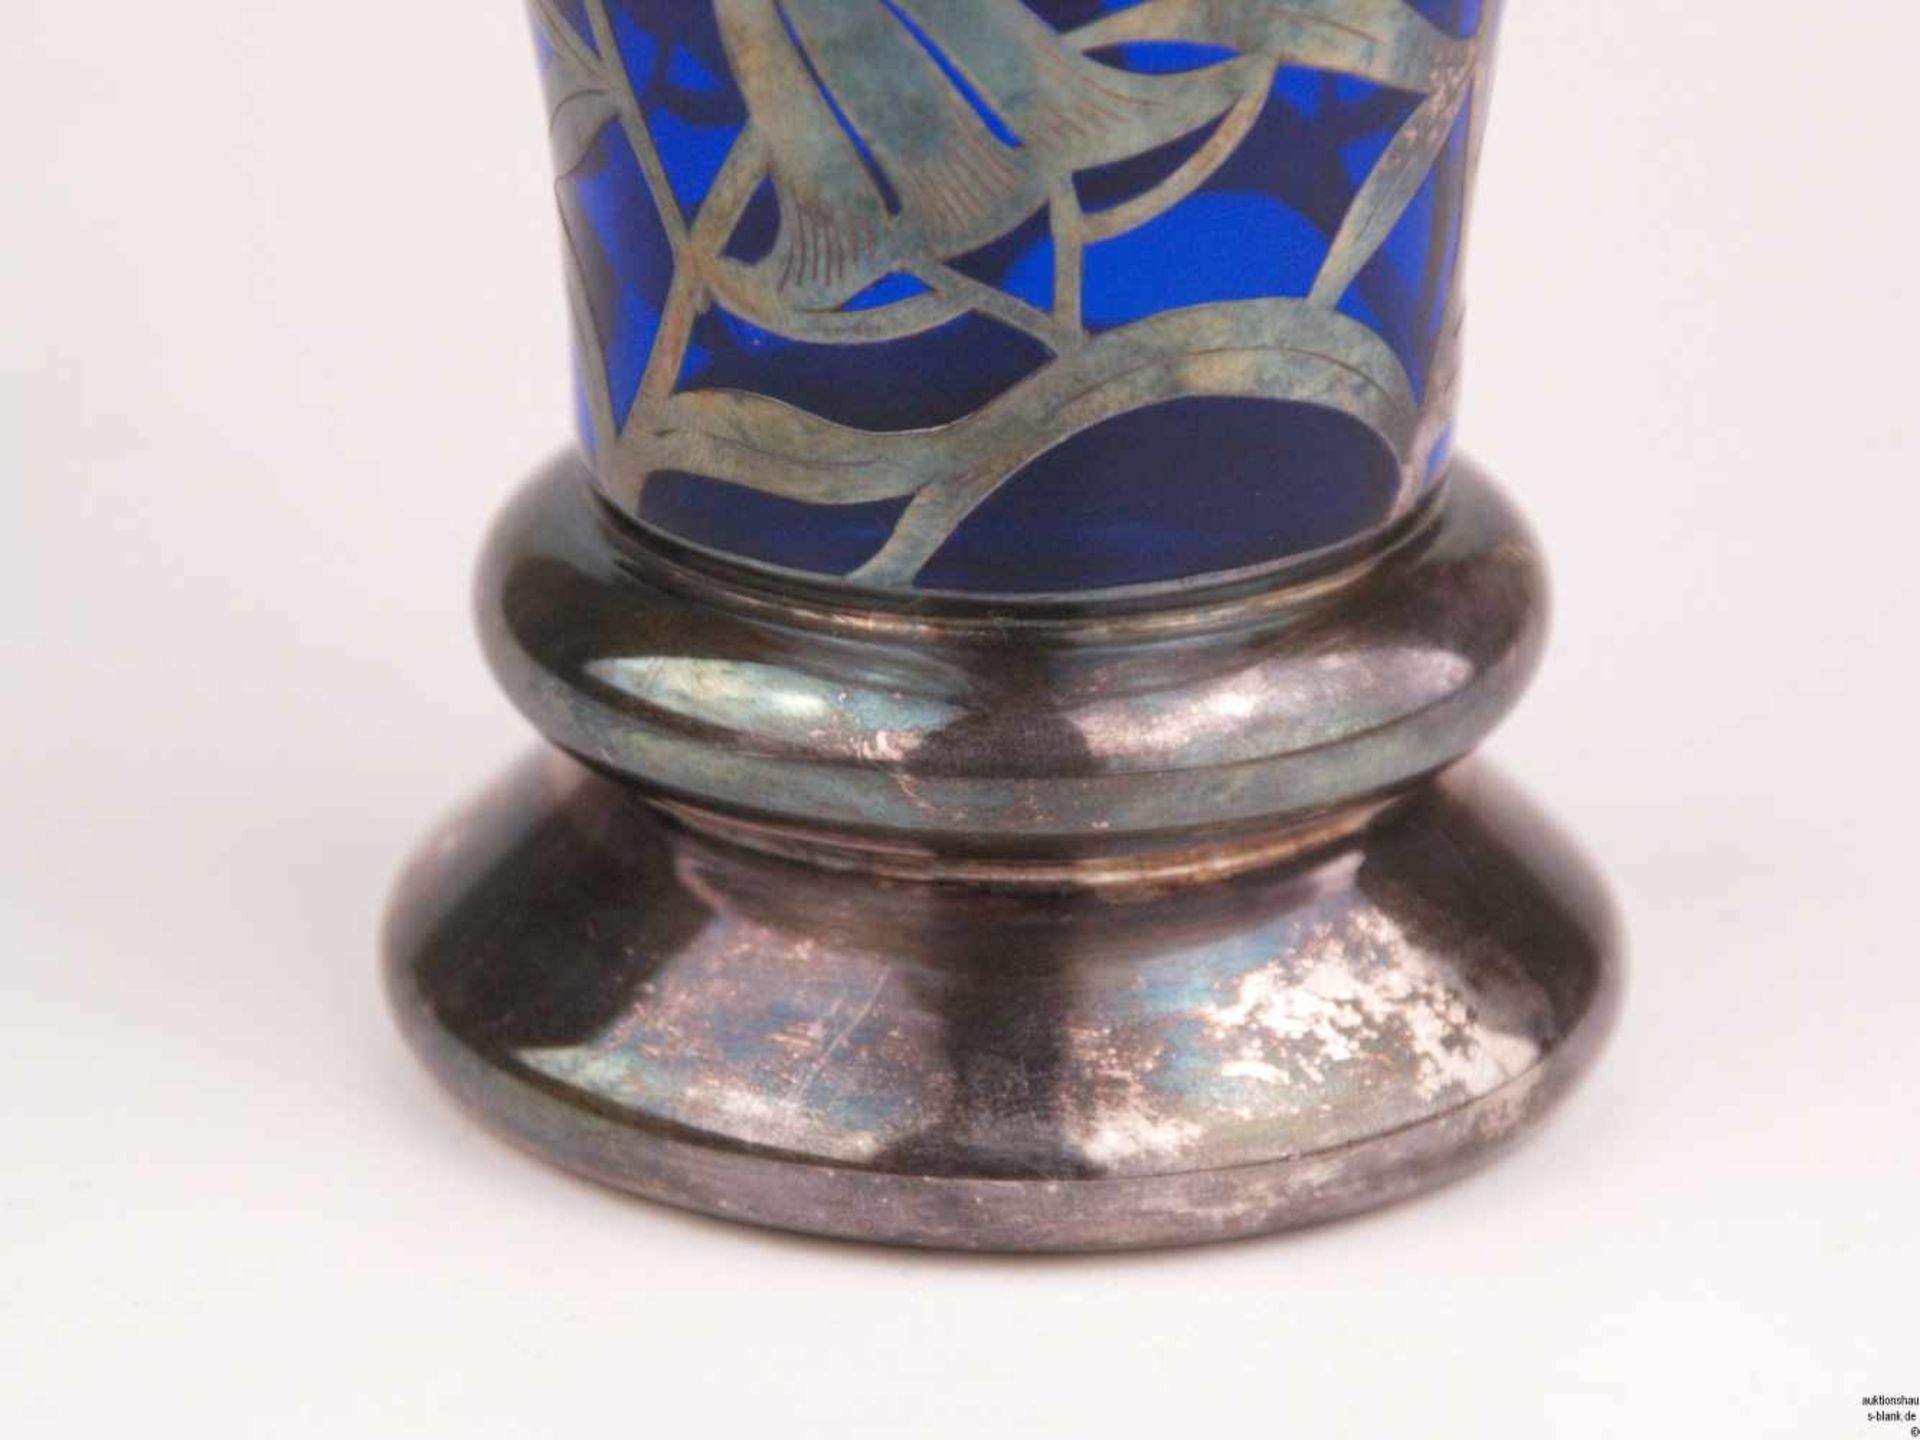 Jugendstilvase - runder Stand, konischer Korpus, kobaltblaues Glas, umlaufend Silberoverlay mit - Bild 4 aus 5